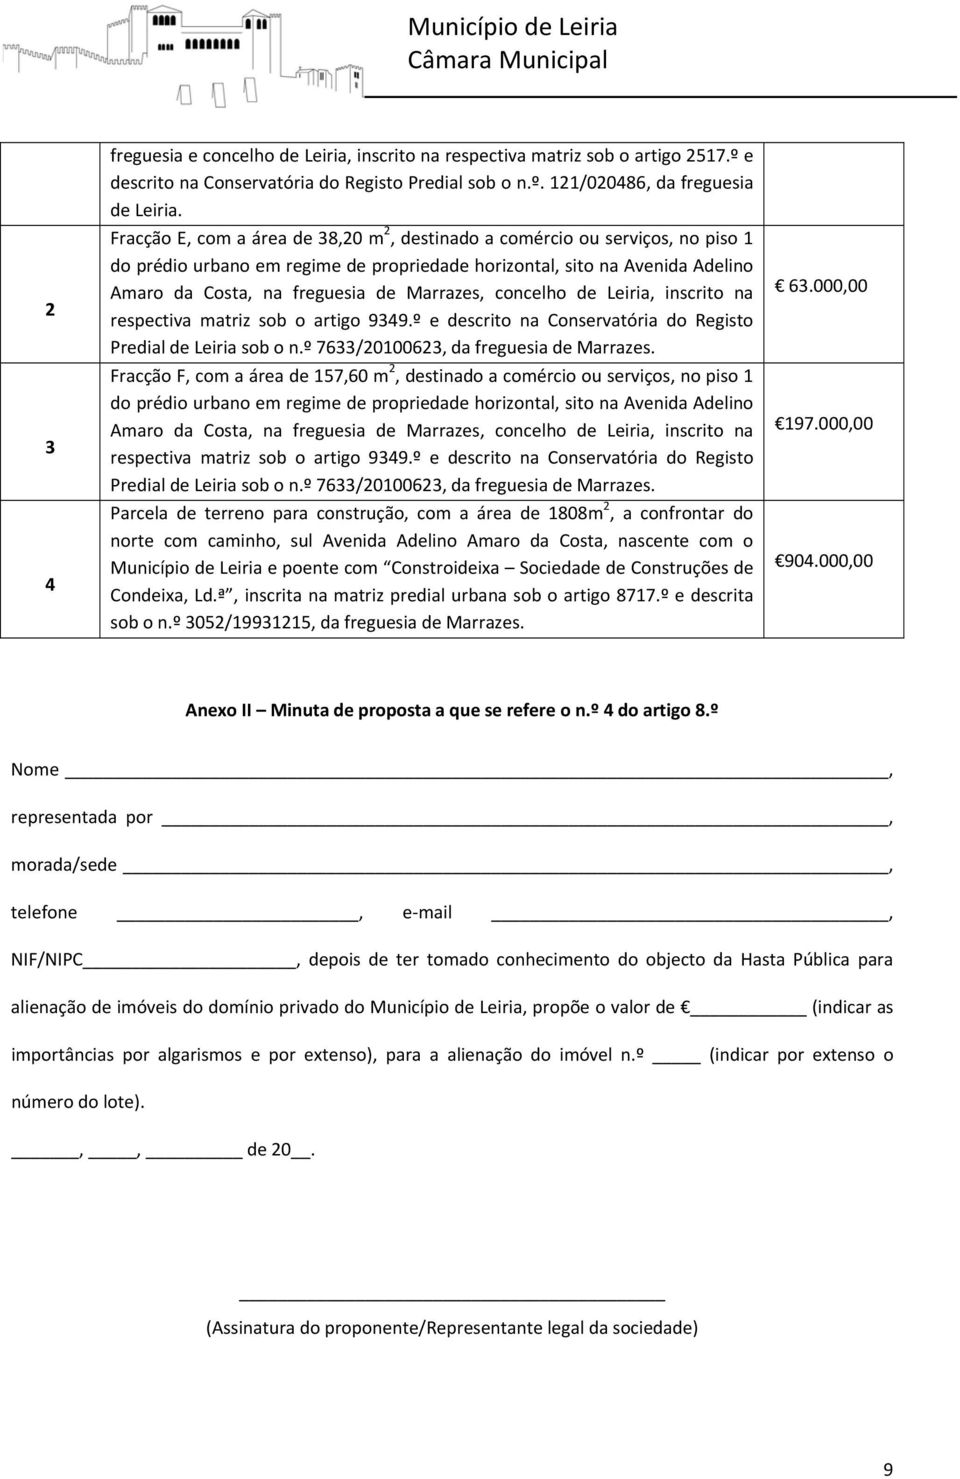 onelho de Leiria, insrito na respetiva matriz sob o artigo 9349.º e desrito na Conservatória do Registo Predial de Leiria sob o n.º 7633/20100623, da freguesia de Marrazes.